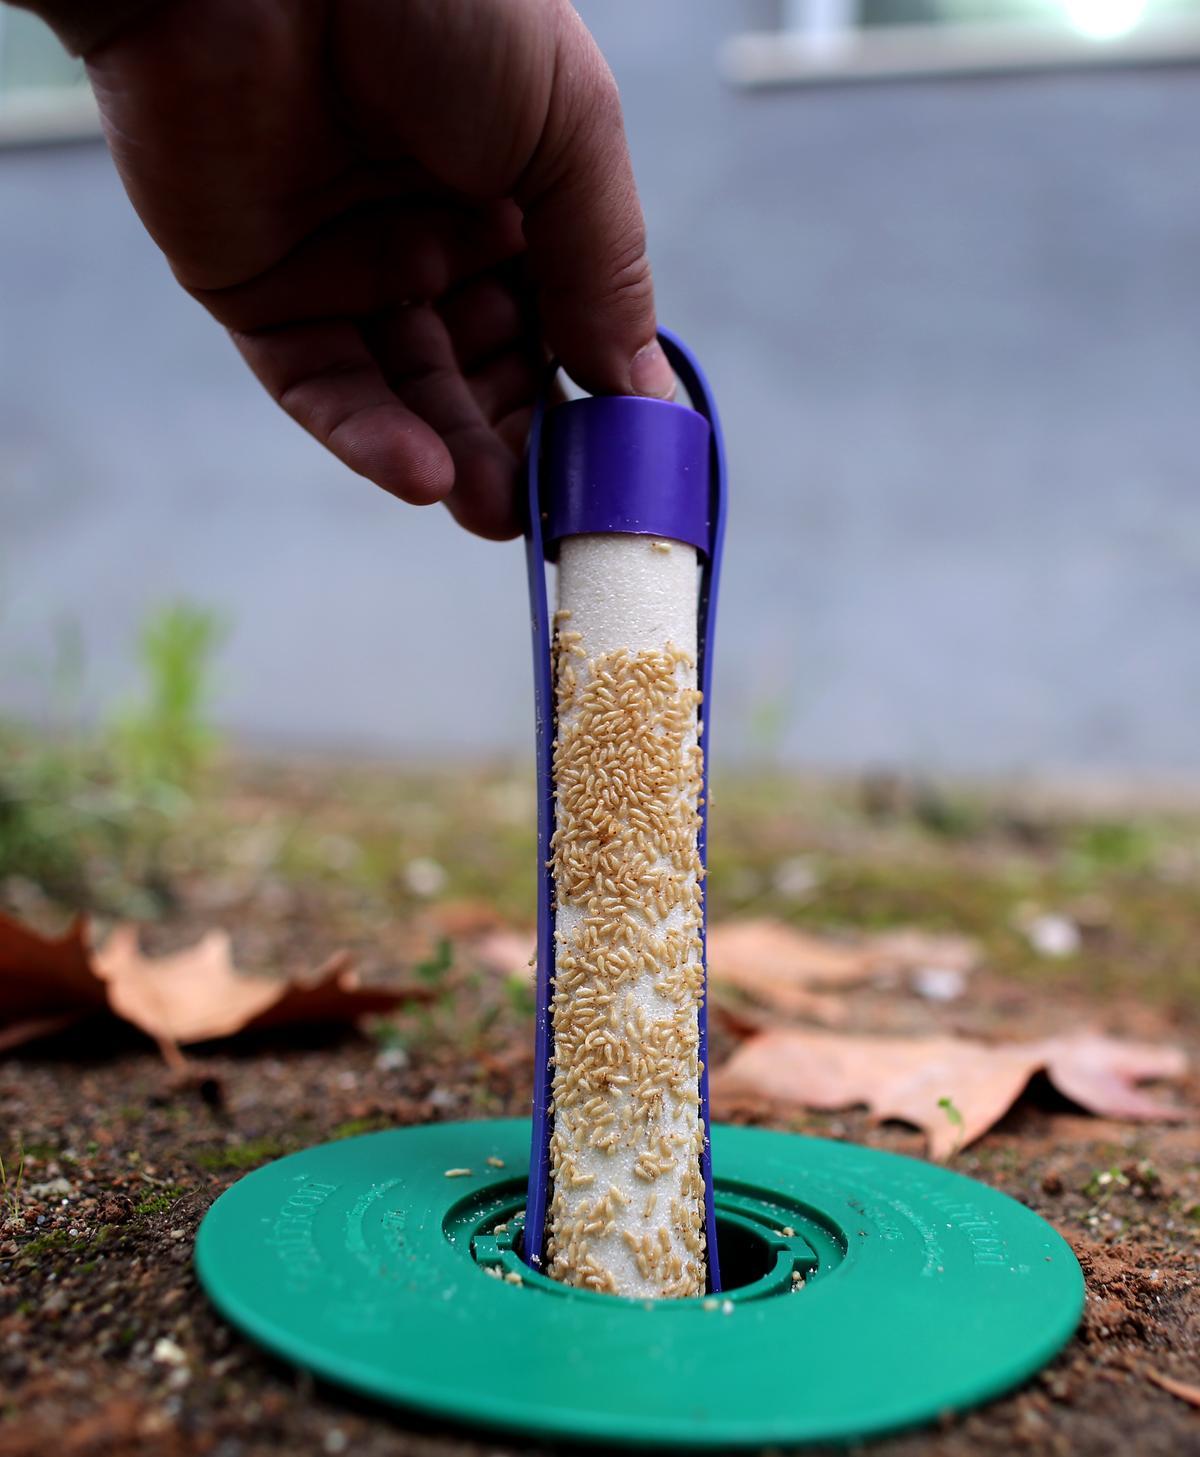 Cebos utilizados por Anticimex para combatir la plaga de termitas.